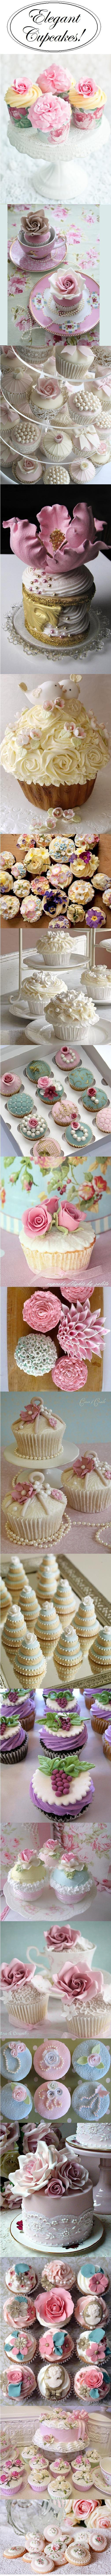 زفاف - Cupcakes!!  Everything Cupcake!  ....Share Your  Favorite Cupcake Bakery, Cupcake Blog, Cupcake Images... Everything Cupcake!